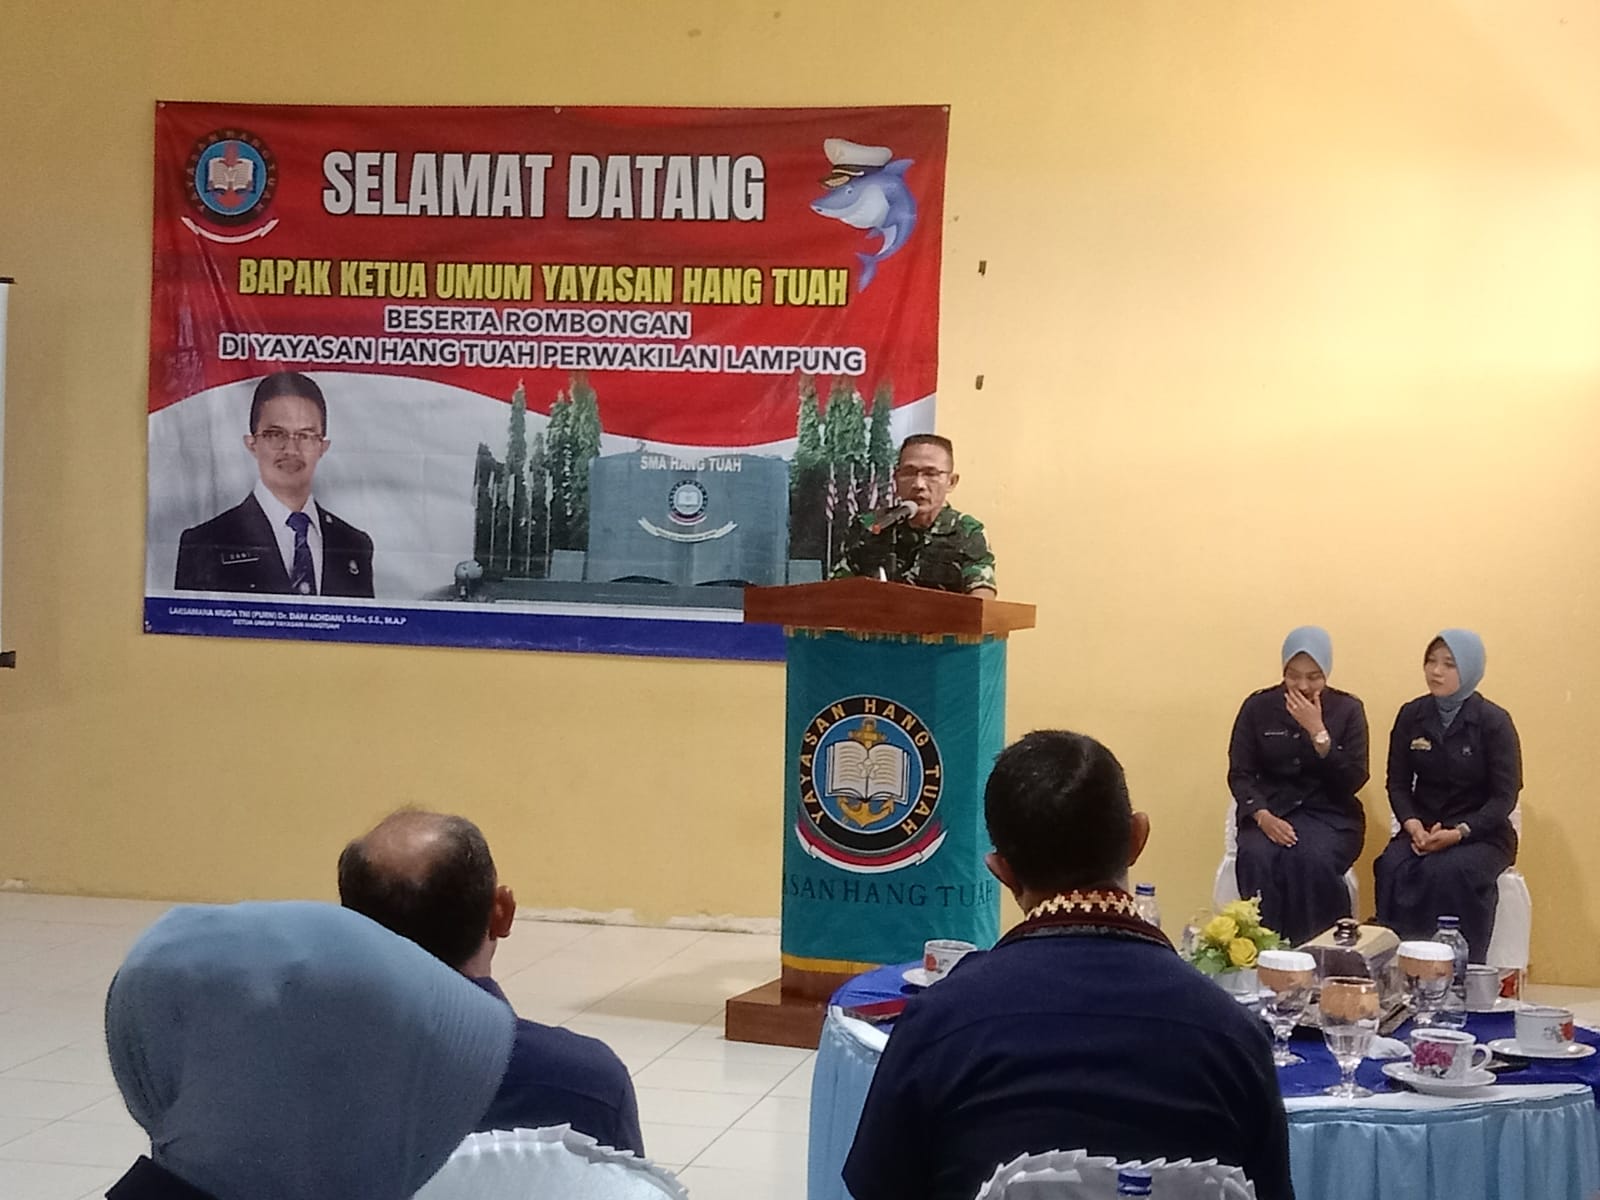 Ketua Umum Yayasan Hang Tuah Laksda (Purn) Dr. Dani Achdani, S.Sos., S.E., M.A.P Mengadakan Peninjauhan Di Satuan Pendidikan Yang Berada Di Lampung Utara